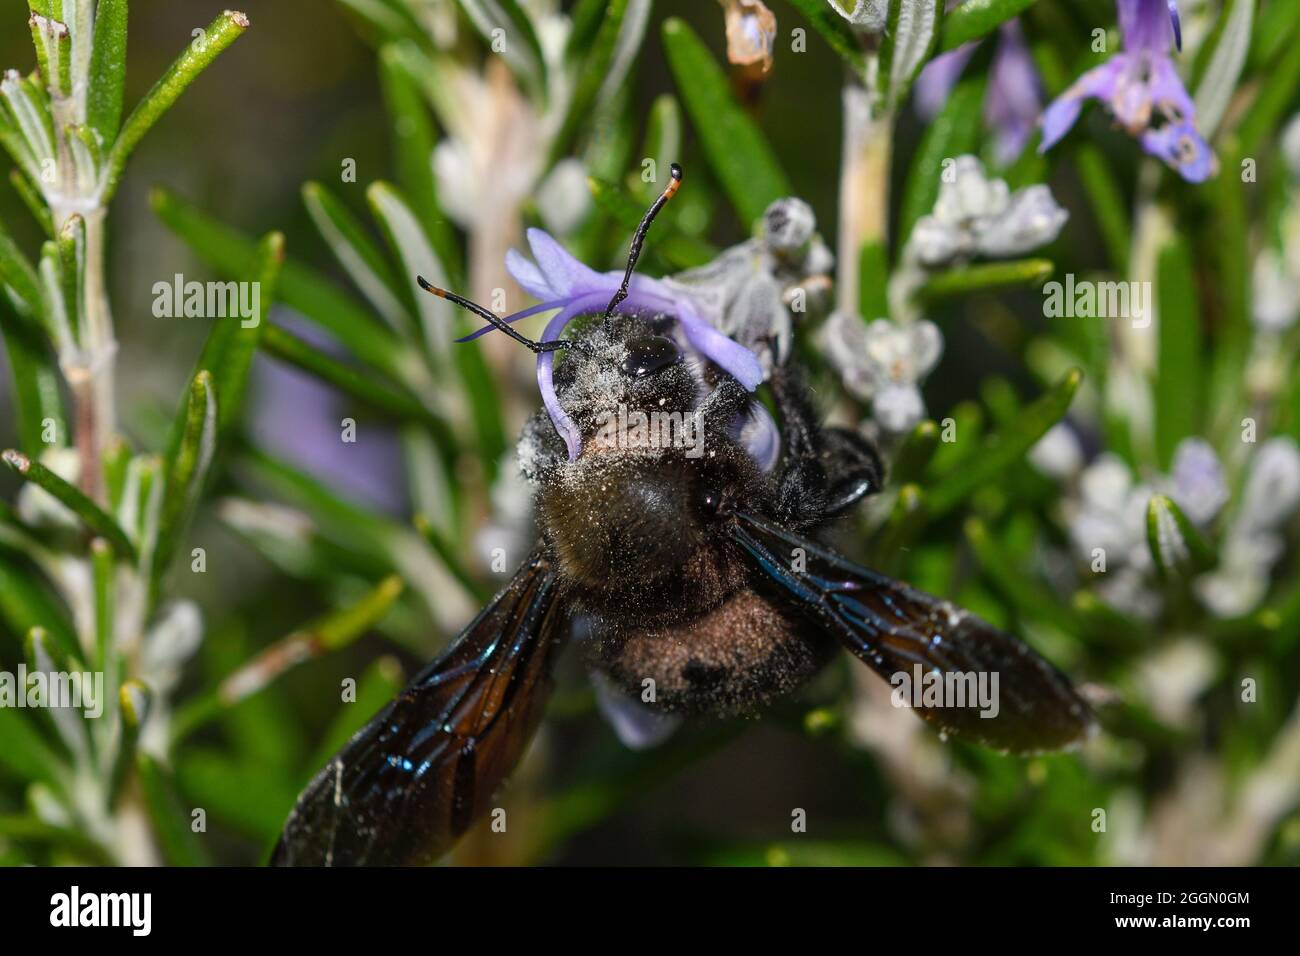 Particolare della testa dell'ape del falegname con le antere del fiore del rosmarino che depositano polline sul suo corpo Foto Stock